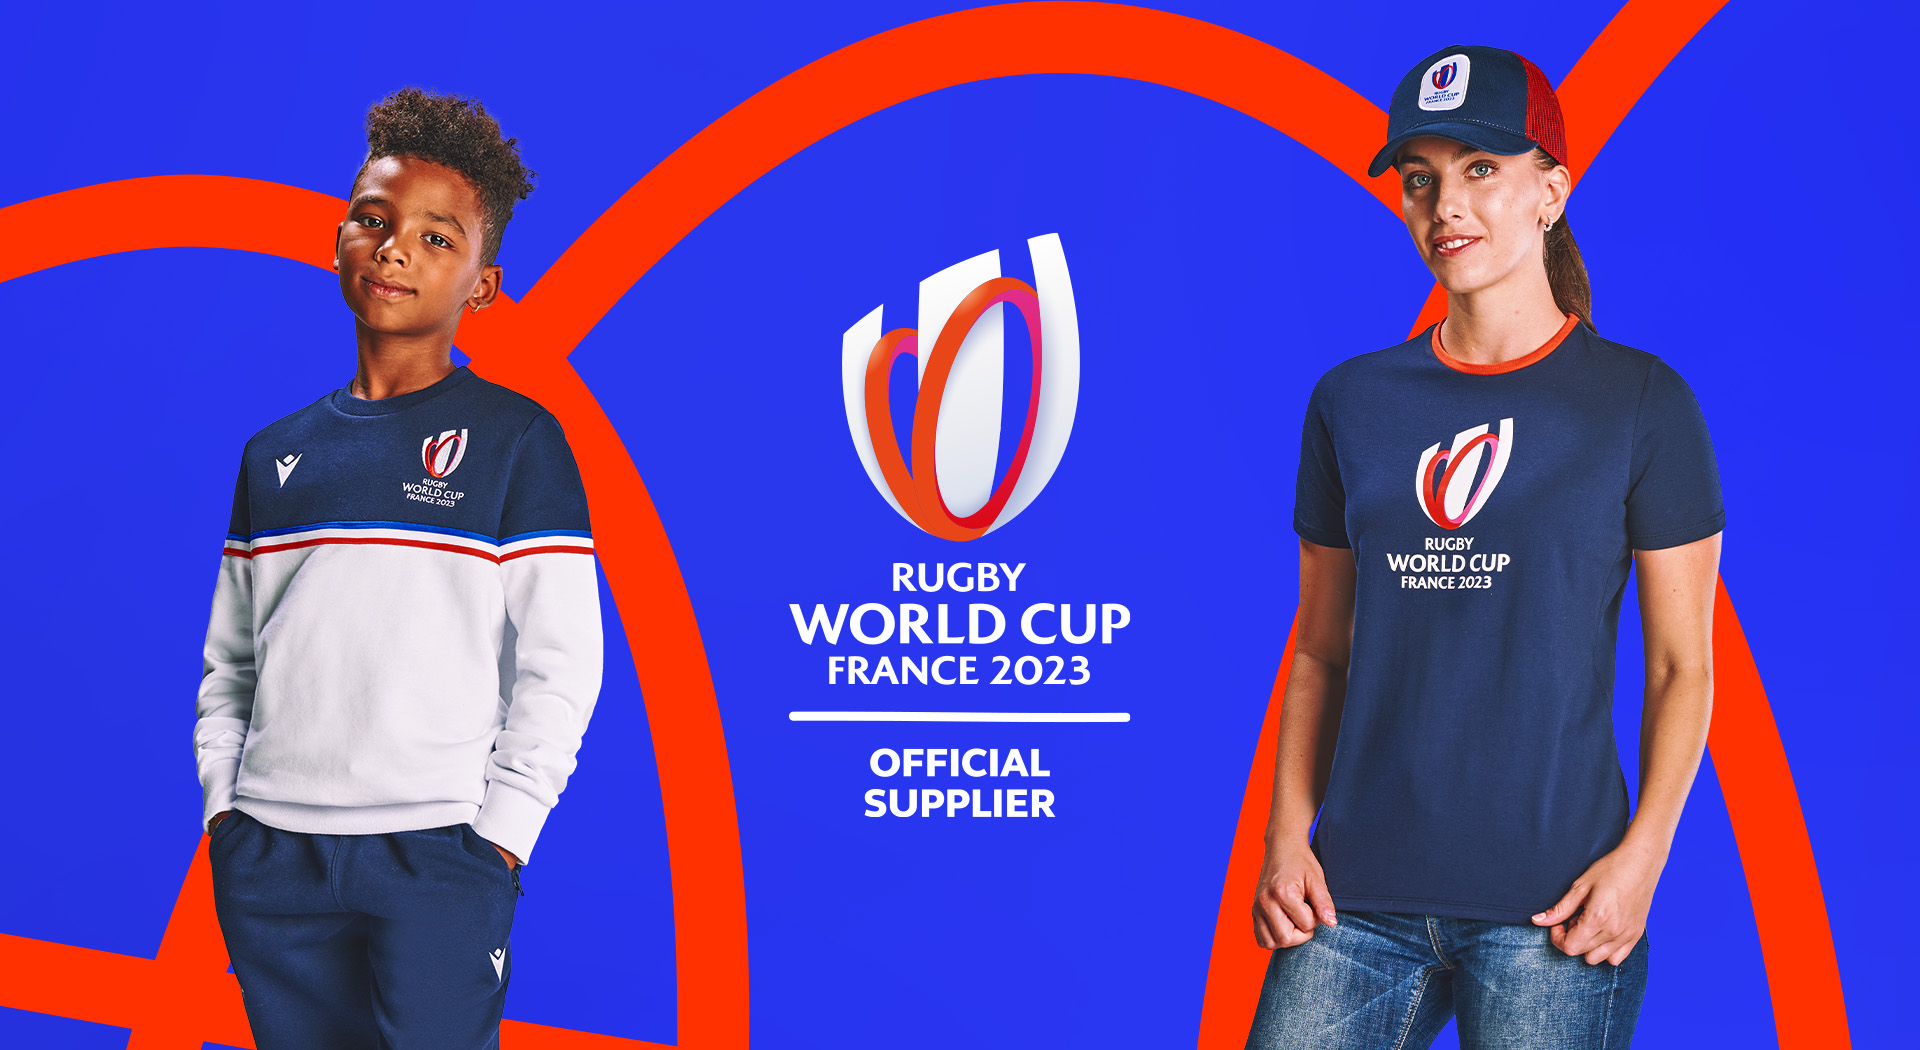 Macron Passion, style et élégance. Macron présente la collection de merchandising officielle de la Rugby World Cup France 2023 | Image 1